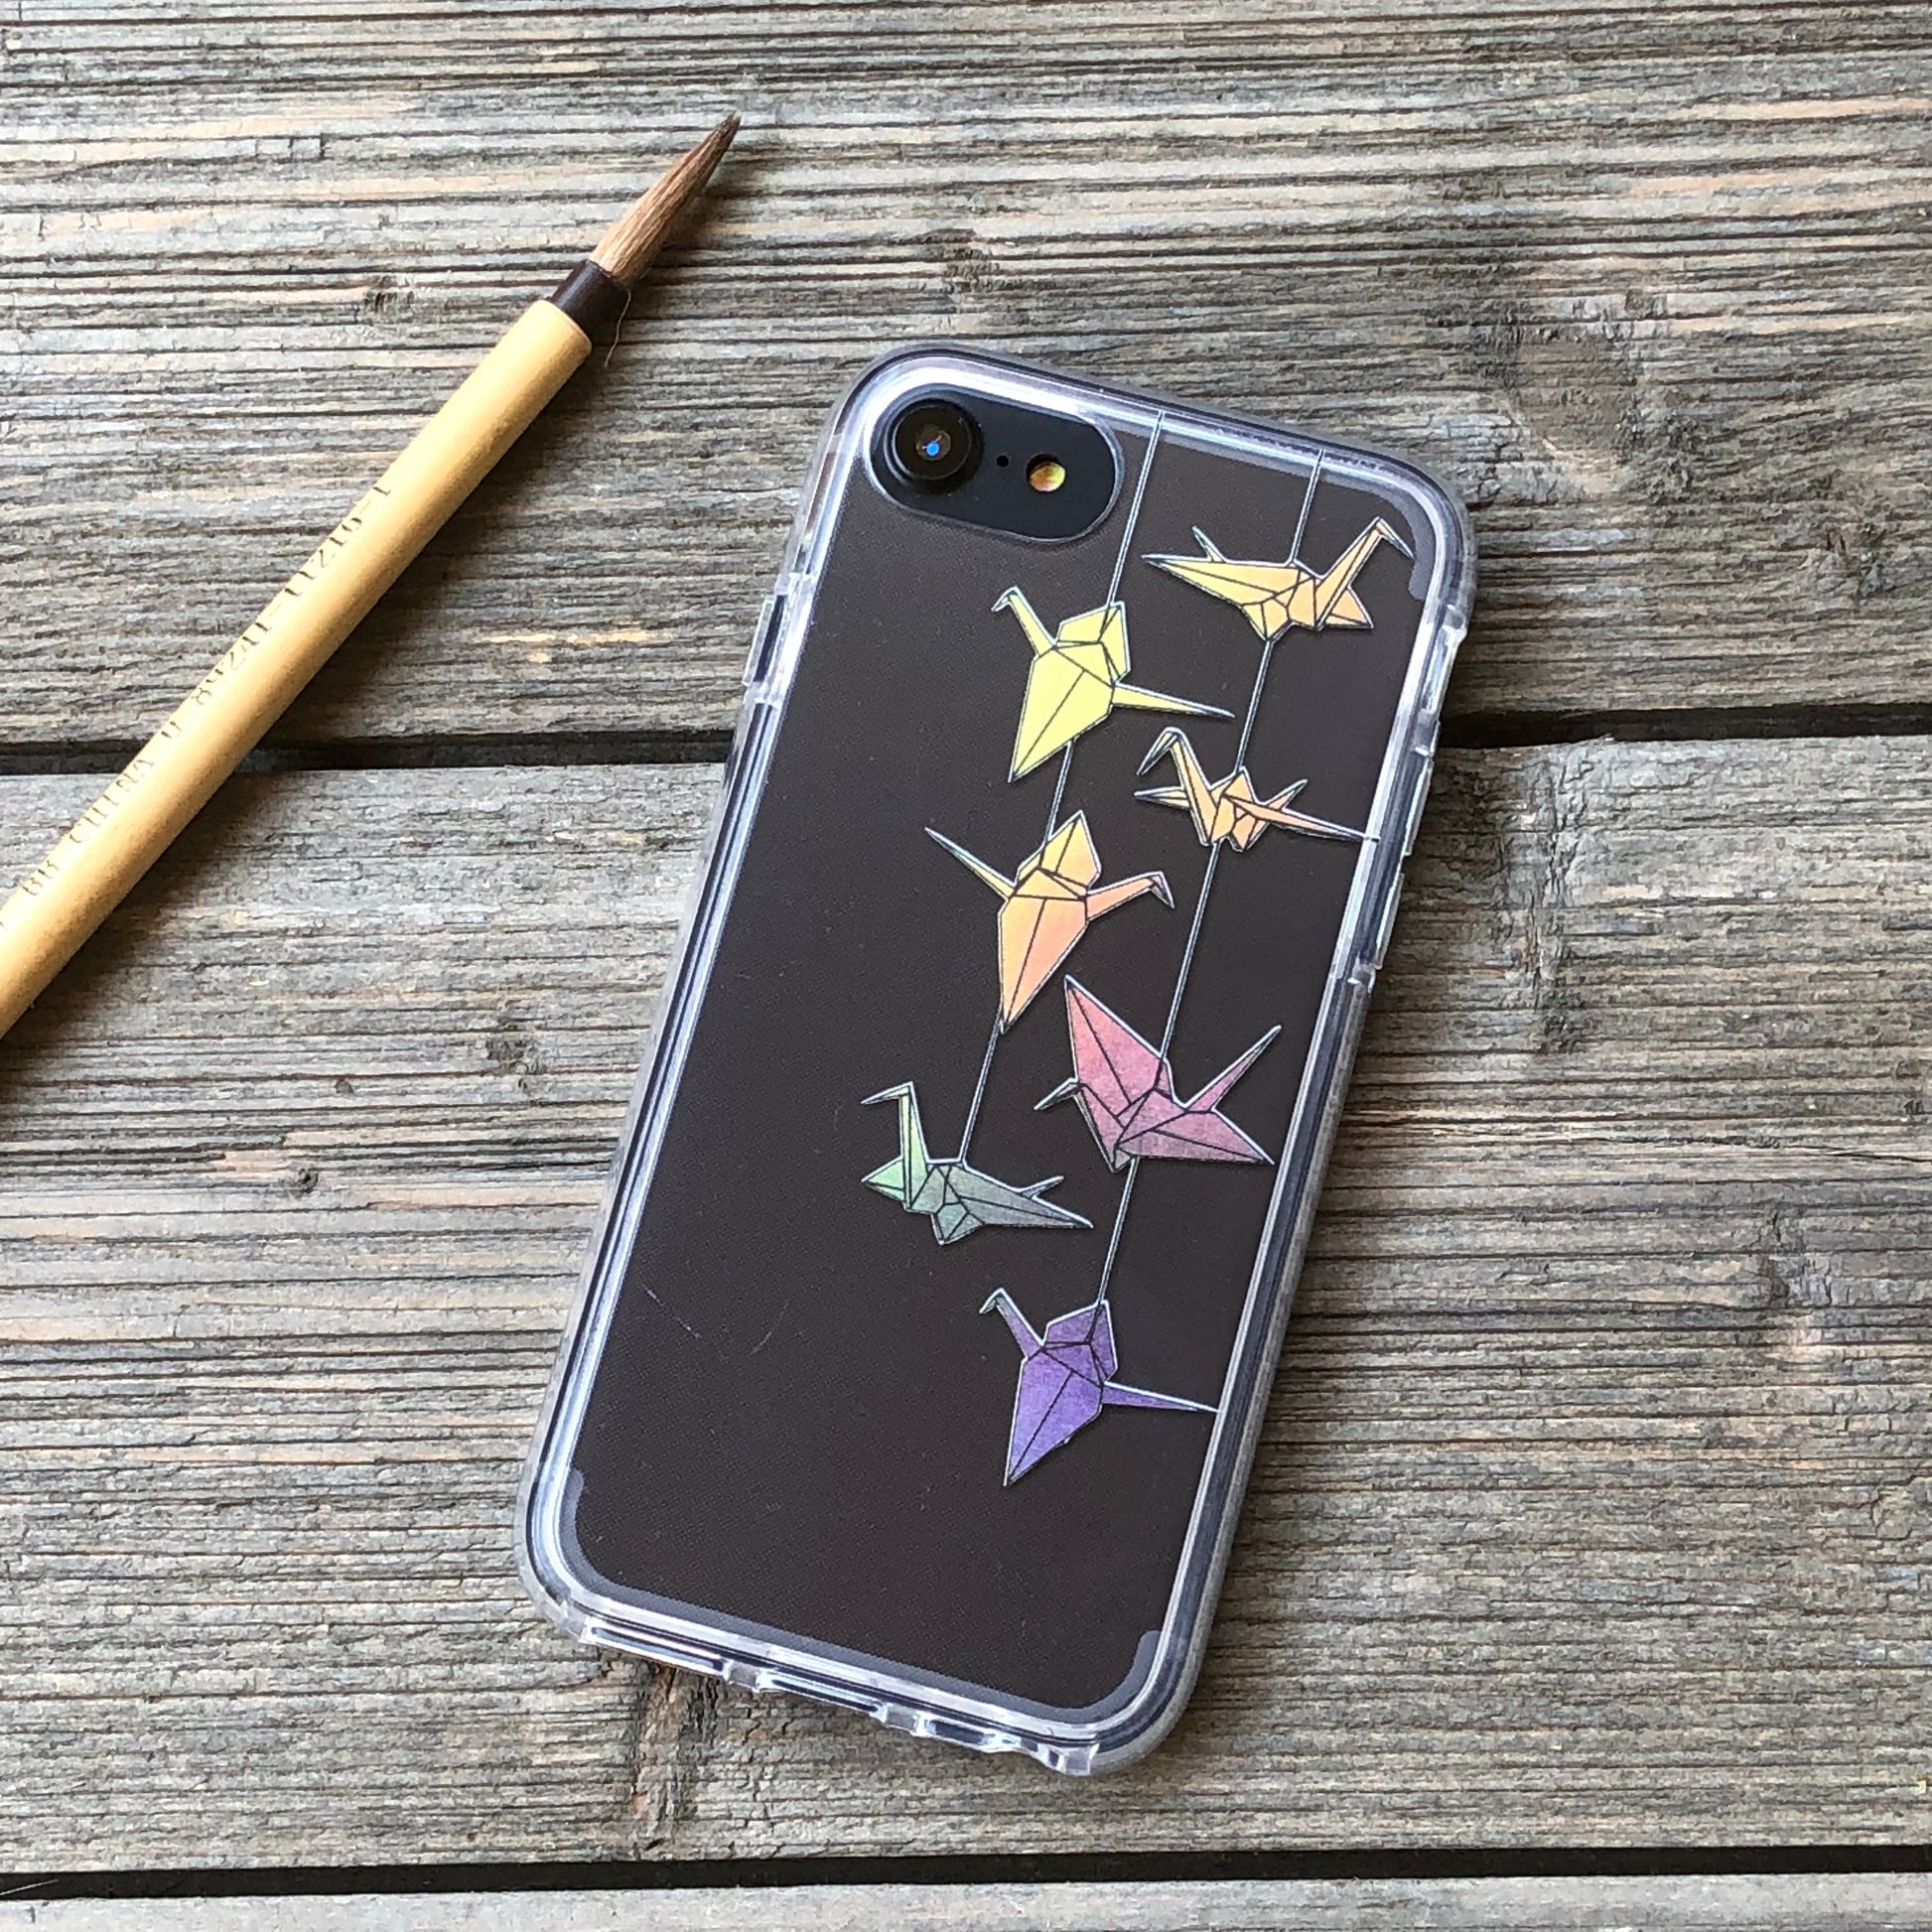 rainbow origami cranes phone case